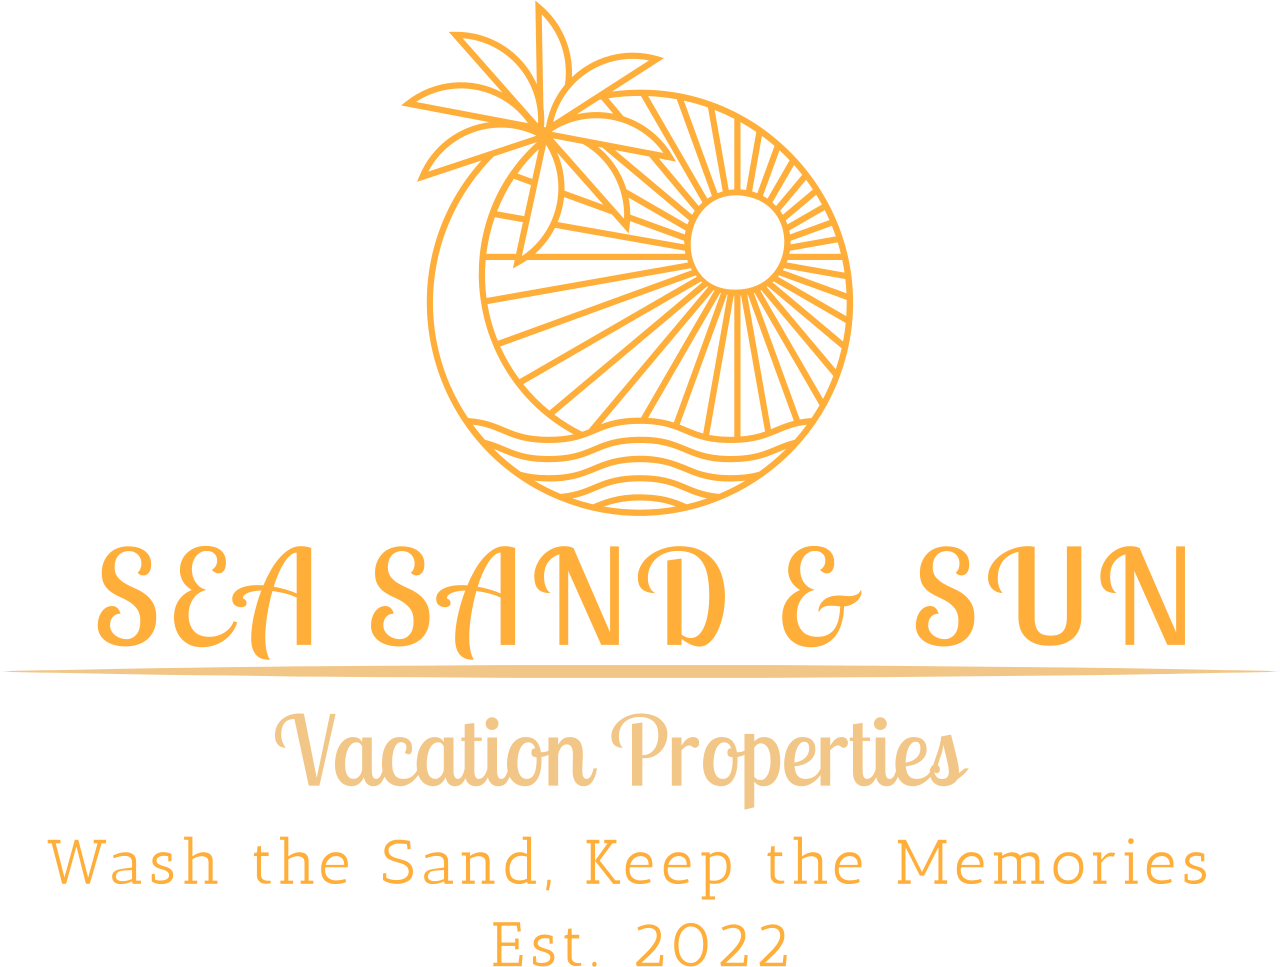 Sea Sand & Sun's web page